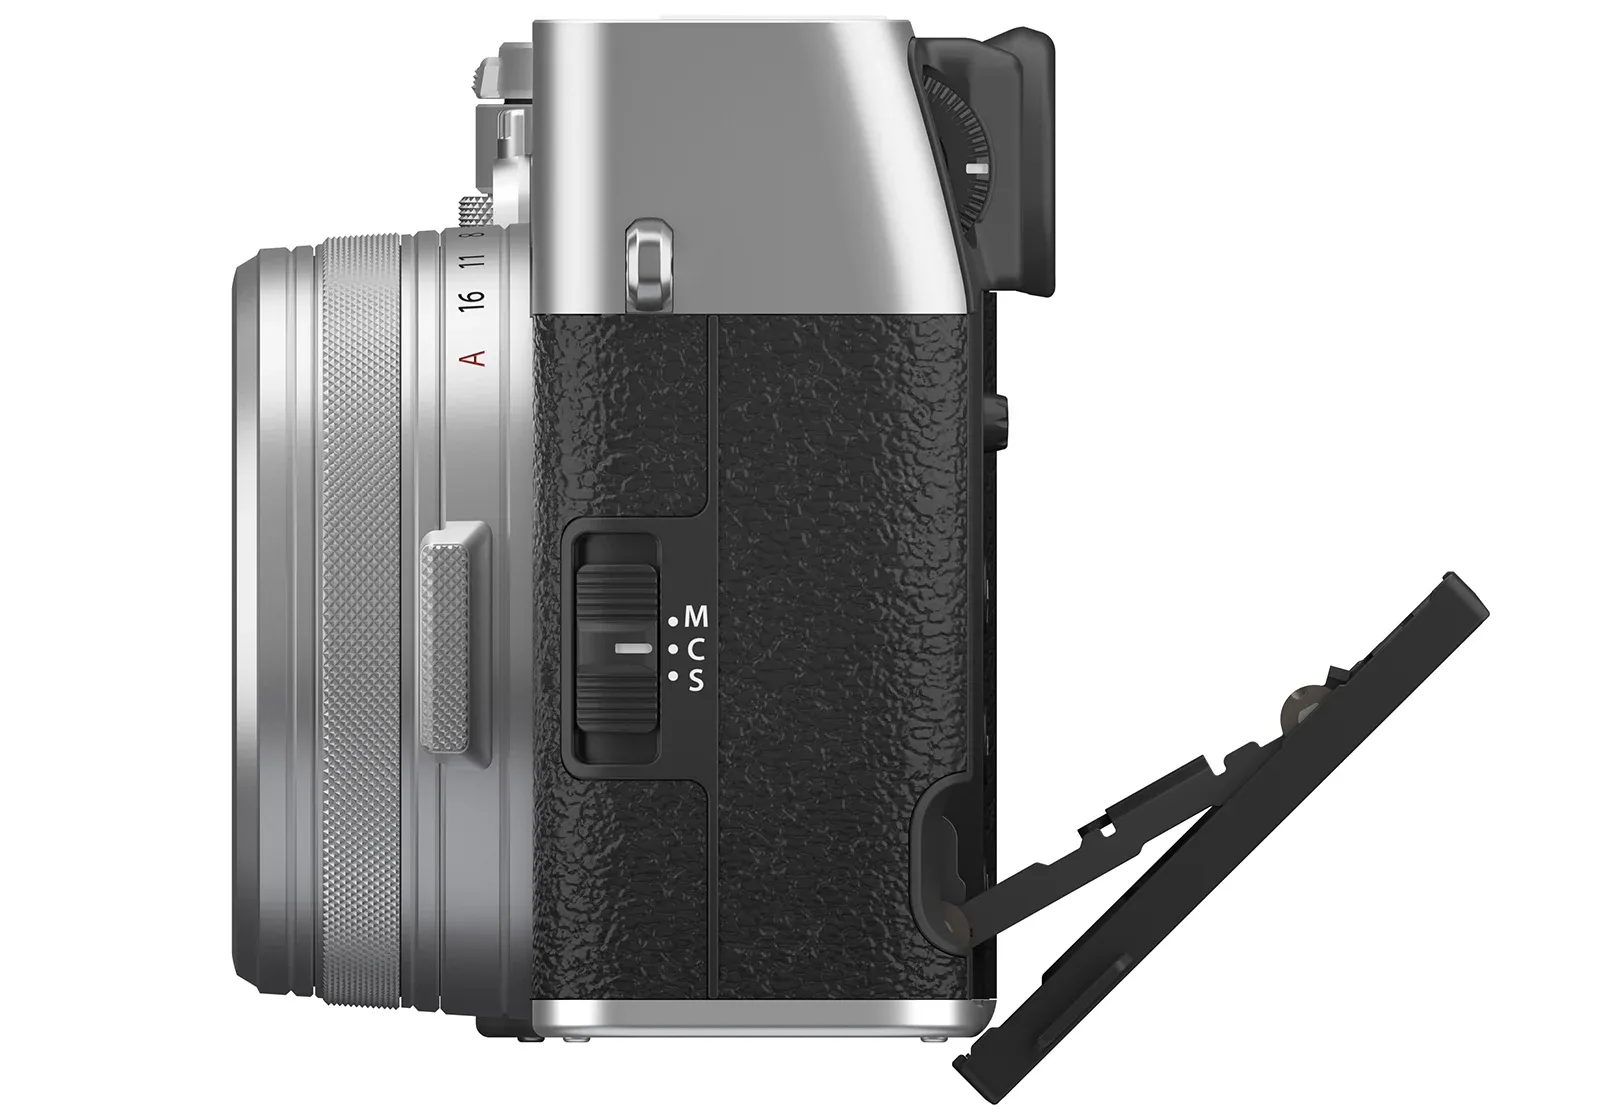 Fujifilm X100VI chính thức ra mắt với nâng cấp cảm biến, hệ thống chống rung 5 trục và giả lập màu Reala Ace